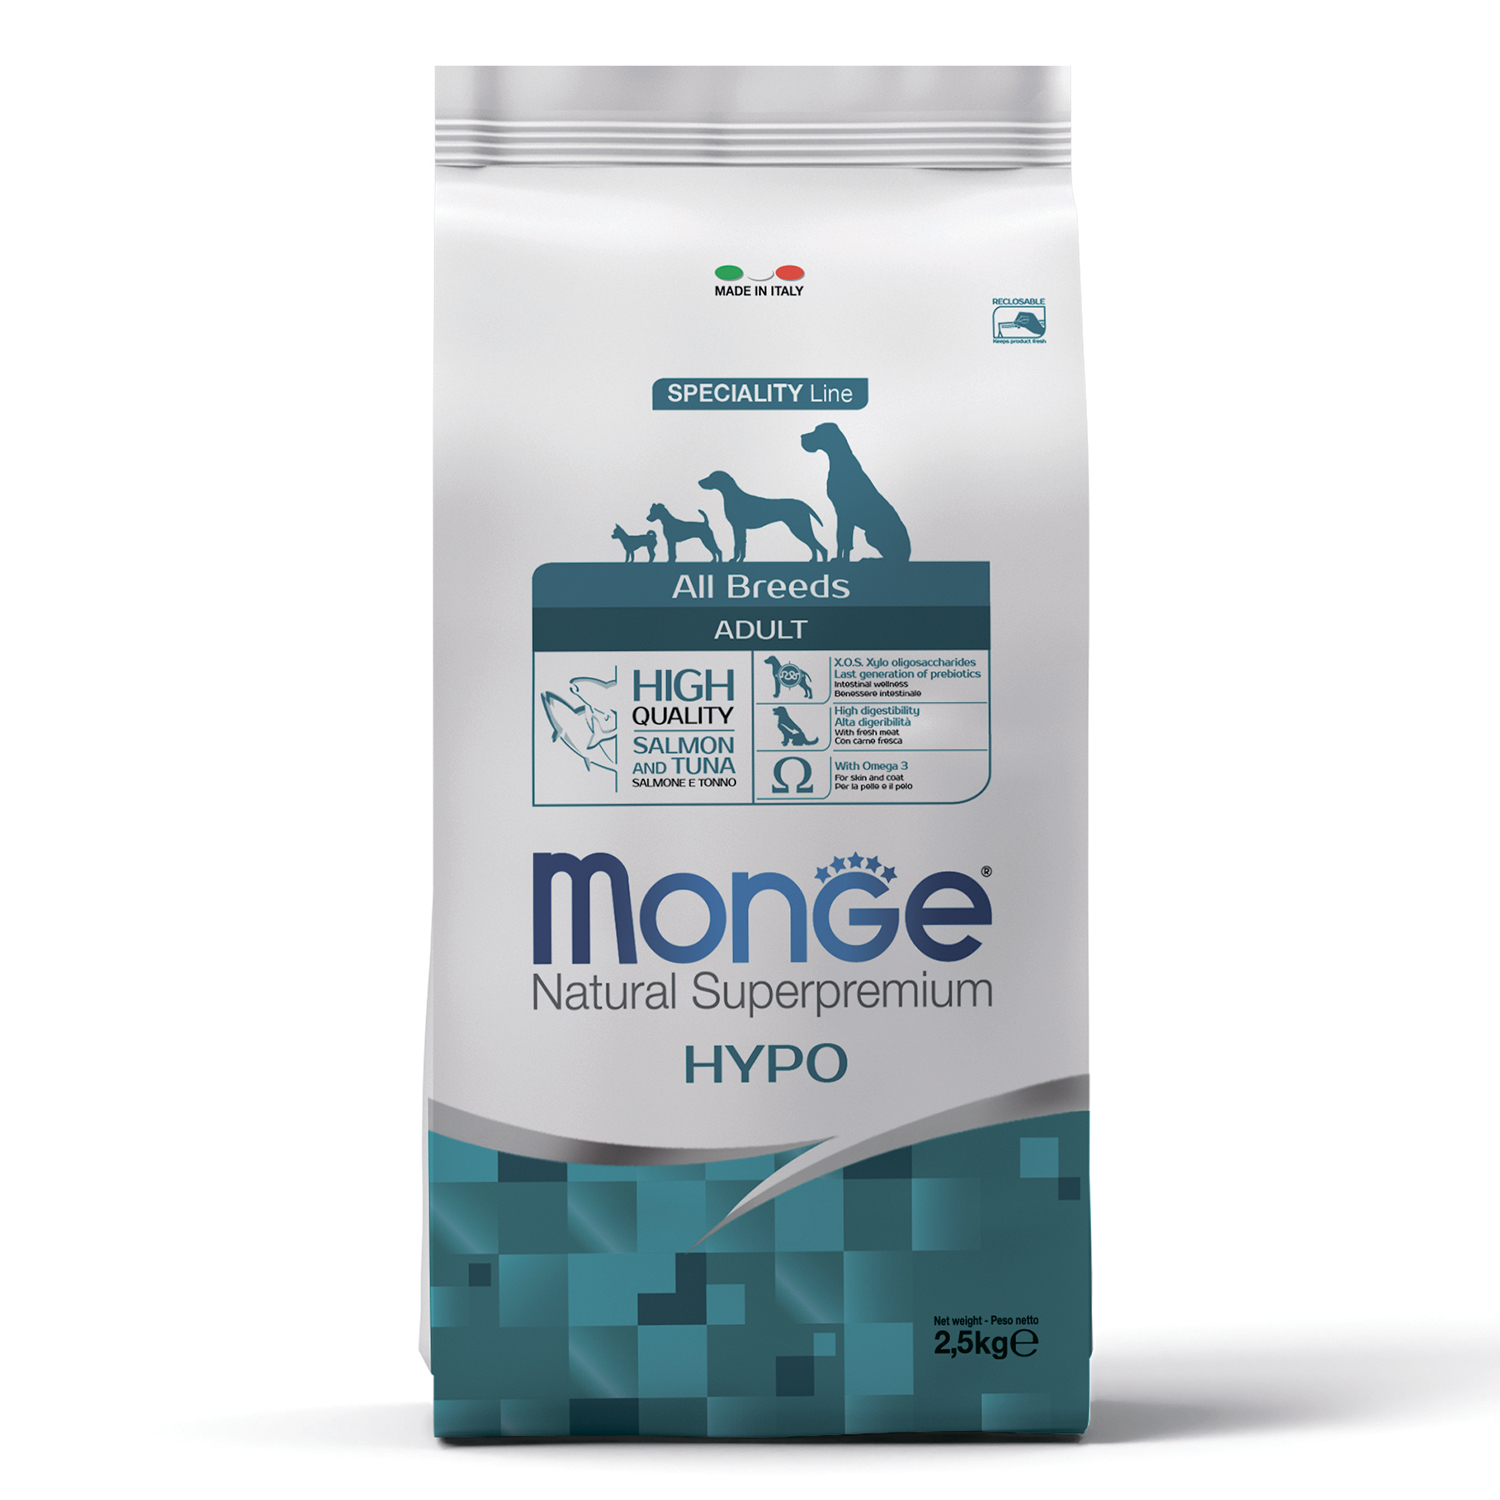 Monge Dog Speciality Hypo корм с лососем и тунцом для взрослых собак всех пород 2,5 кг зоомагазине gavgav-market